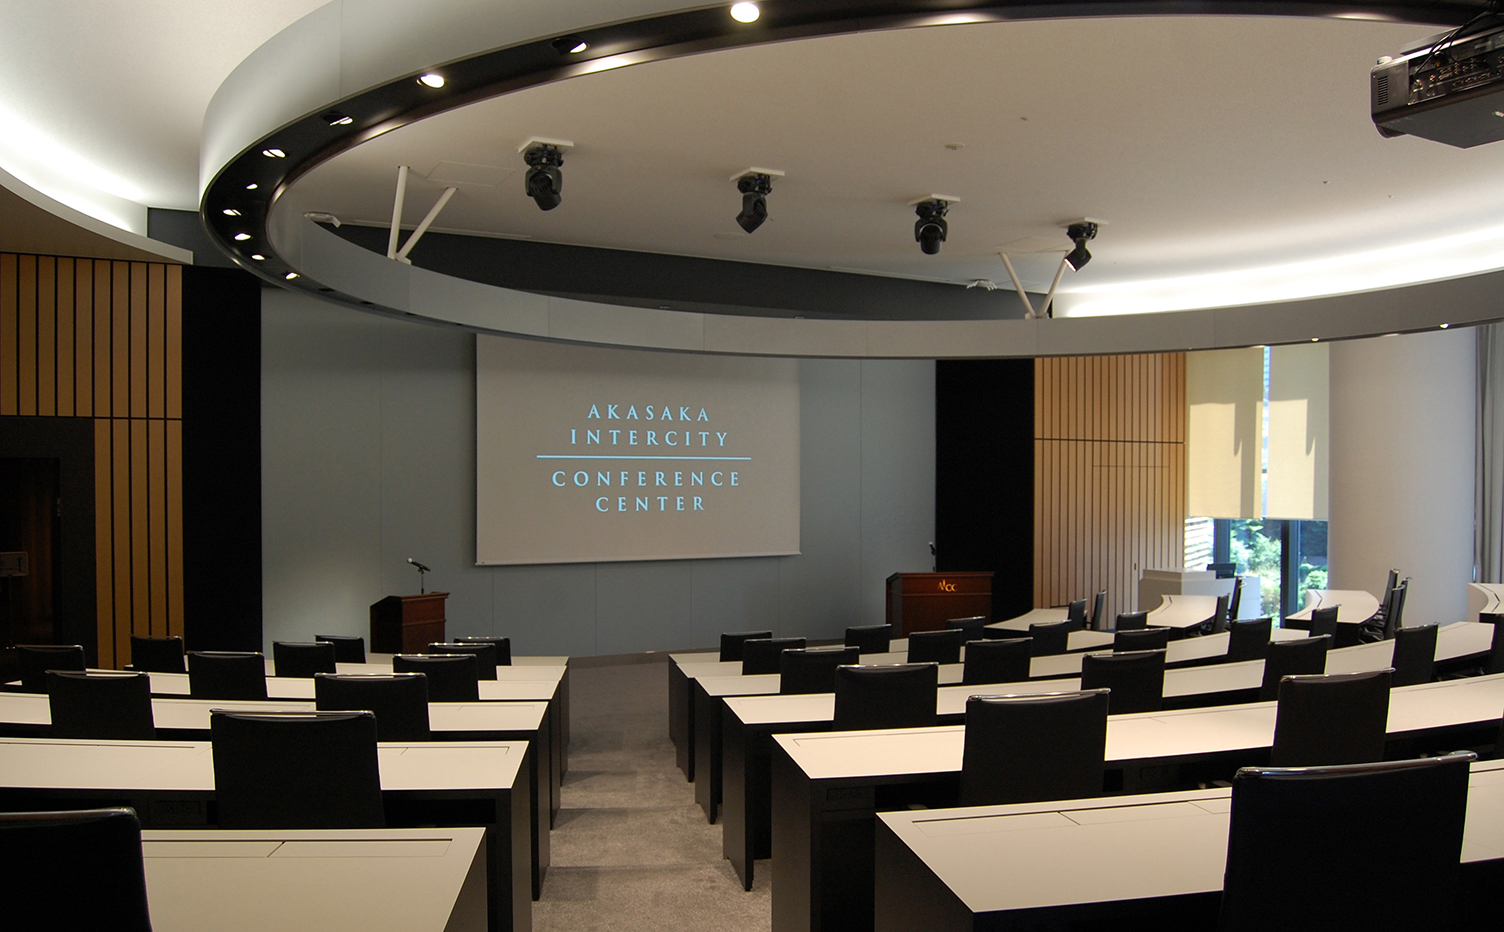 「the Amphitheater」 65席を備えた扇形の会議室。昇降式180インチスクリーン、2面投影が可能なガラススクリーンを設置。ガラススクリーンでは「マルチウィンドウパス」による複数映像表示が可能